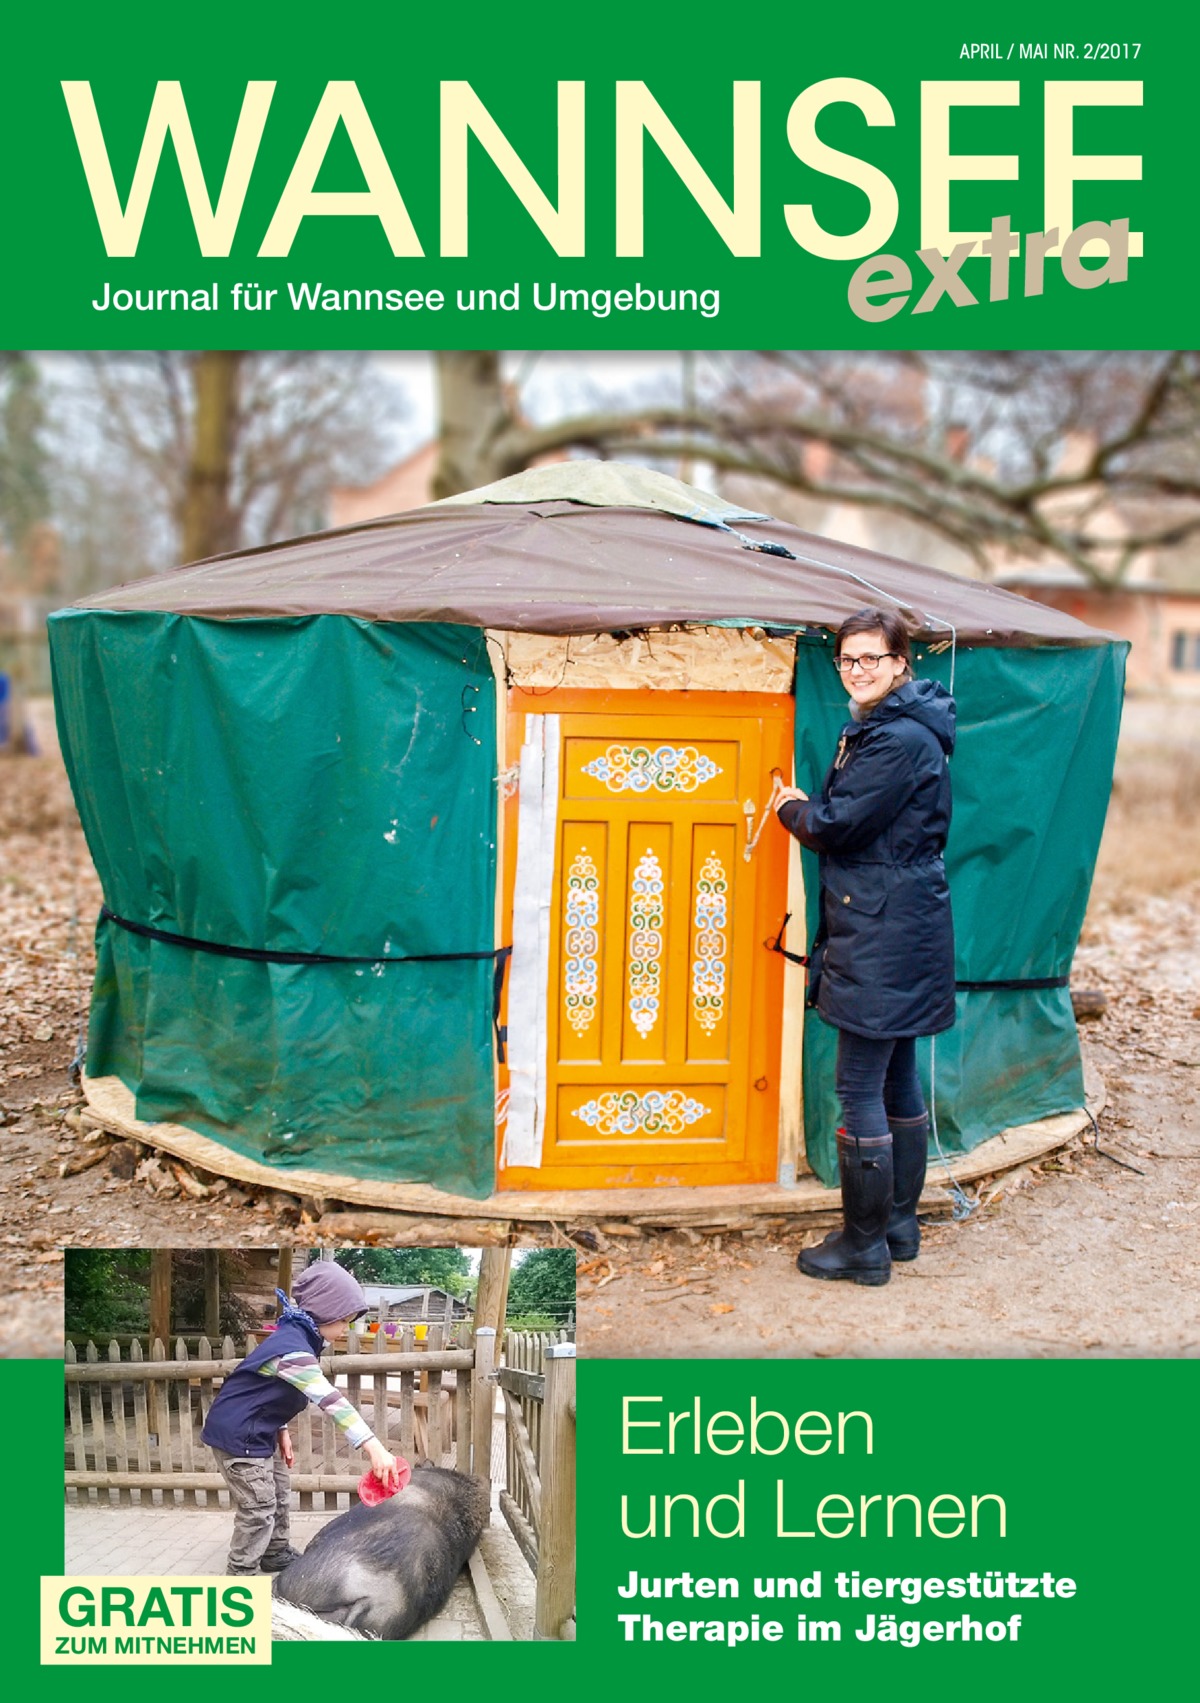 WANNSEE extra APRIL / MAI NR. 2/2017  Journal für Wannsee und Umgebung  Erleben und Lernen GRATIS  ZUM MITNEHMEN  Jurten und tiergestützte Therapie im Jägerhof